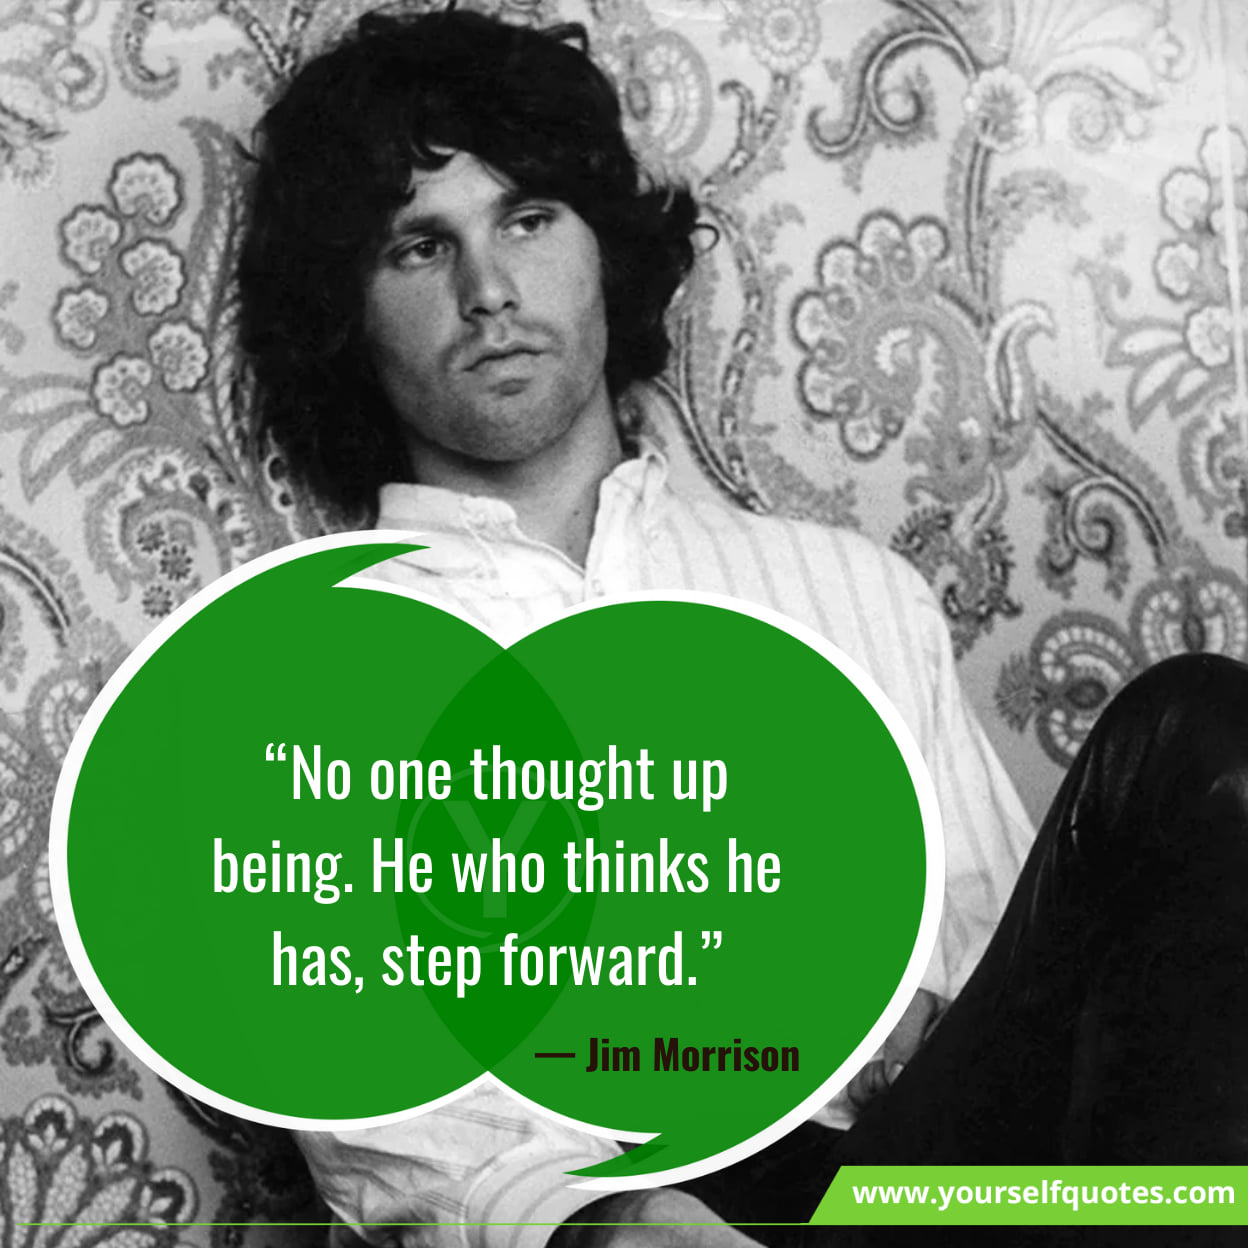 6 Quotes About Jim Morrison